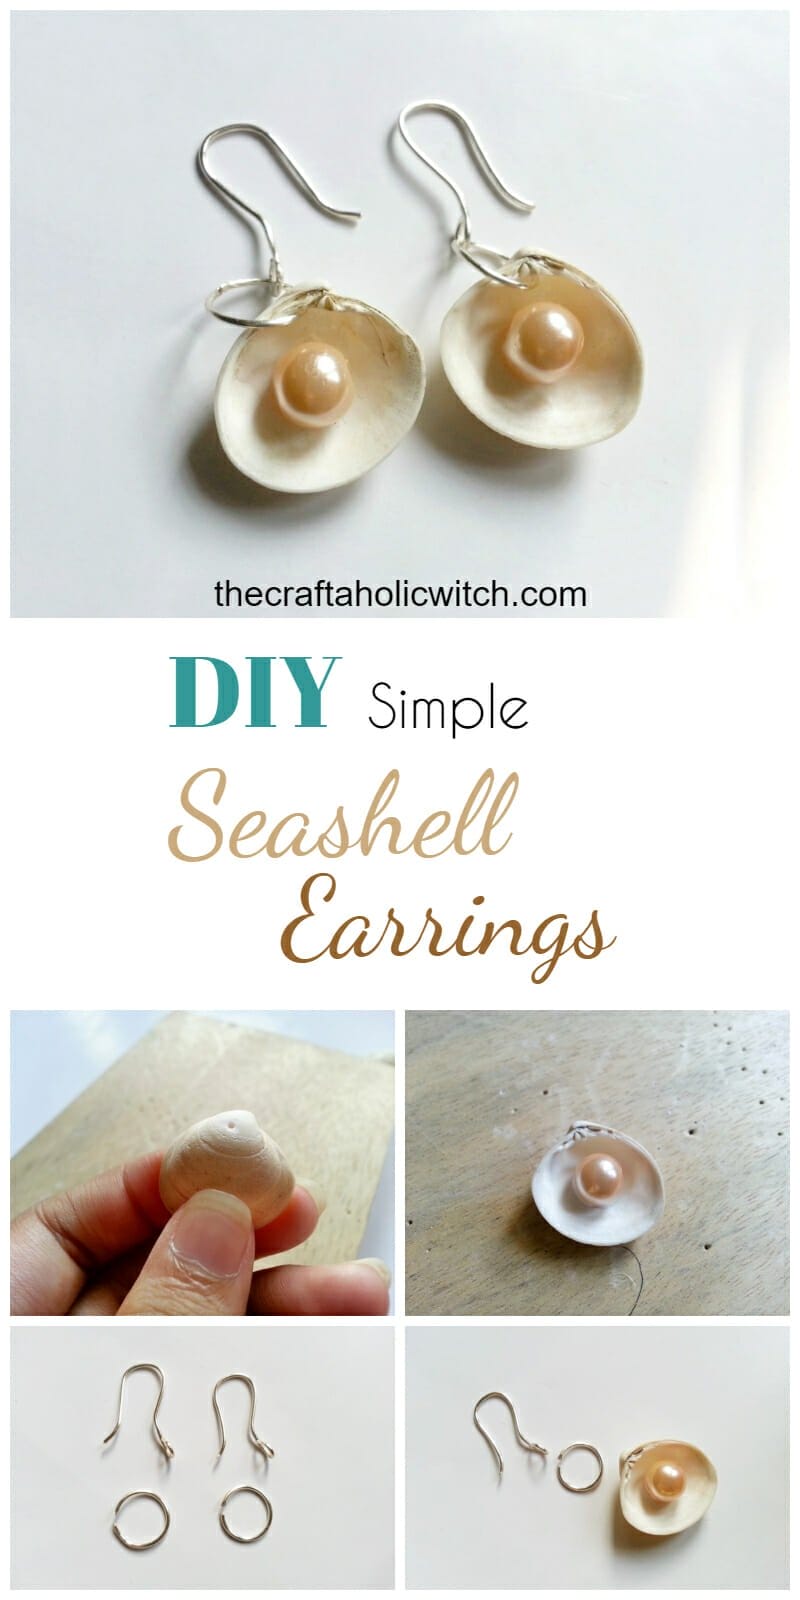 seashell earrings pin image - Create Sea Shell Earrings